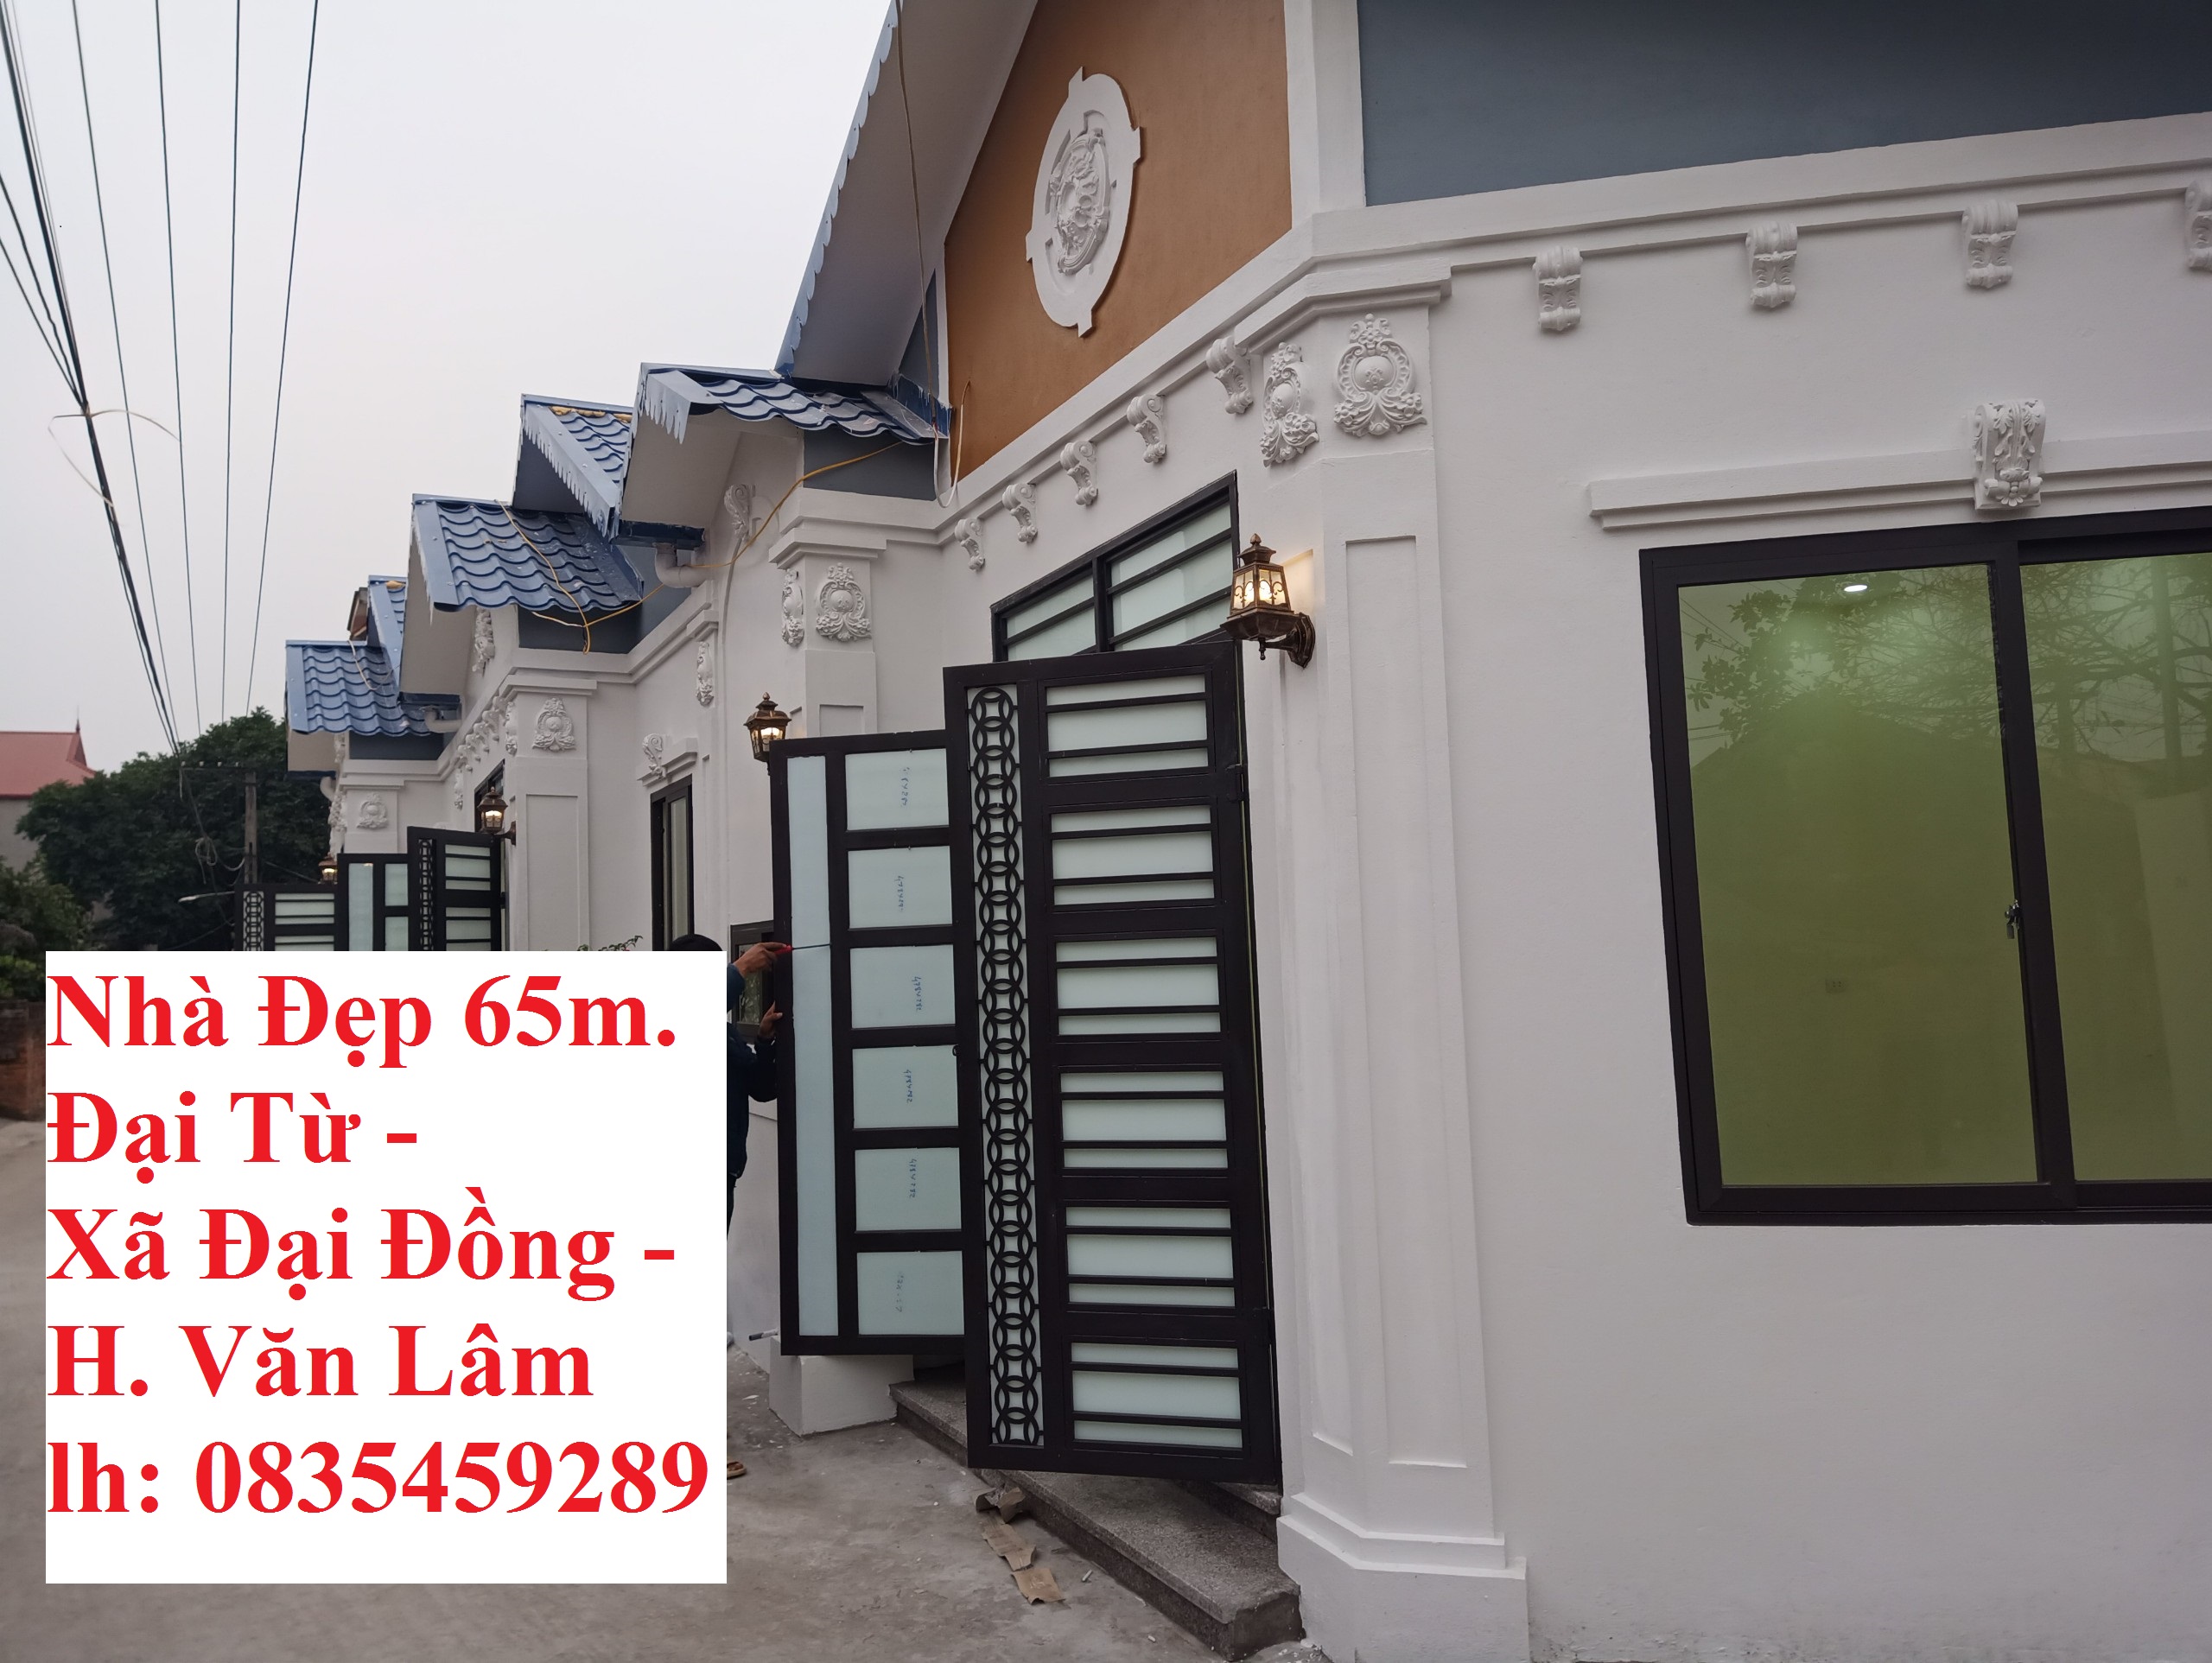 Tặng ngay 1 Cây Vàng cho khách mua nhà ở Đại Đồng, Văn Lâm lh 0835459289